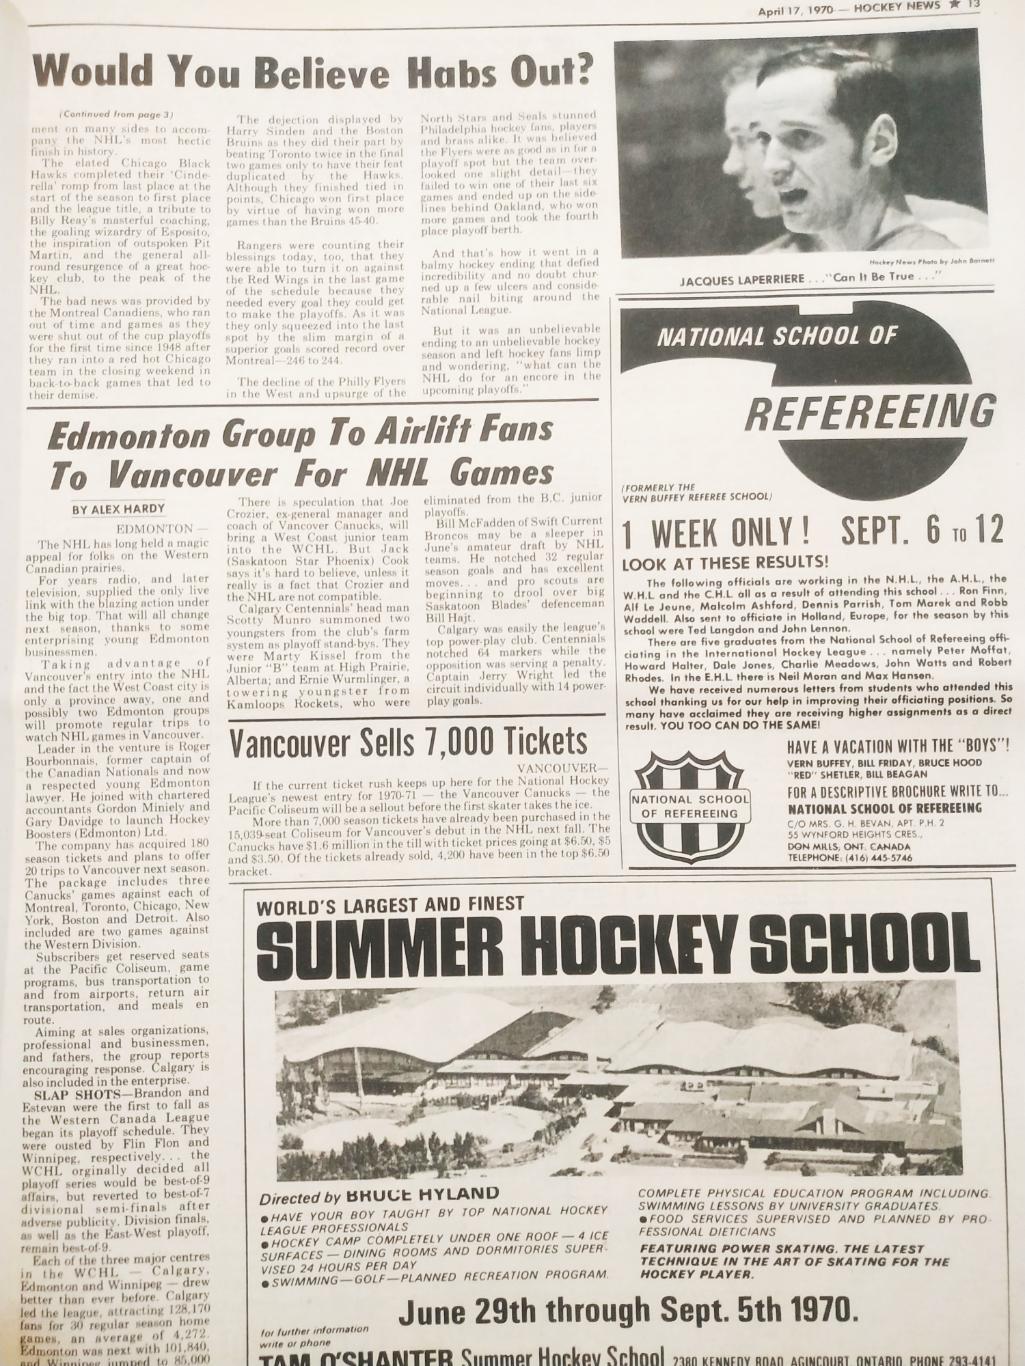 ХОККЕЙ ЖУРНАЛ ЕЖЕНЕДЕЛЬНИК НХЛ НОВОСТИ ХОККЕЯ APR.17 1970 NHL THE HOCKEY NEWS 5